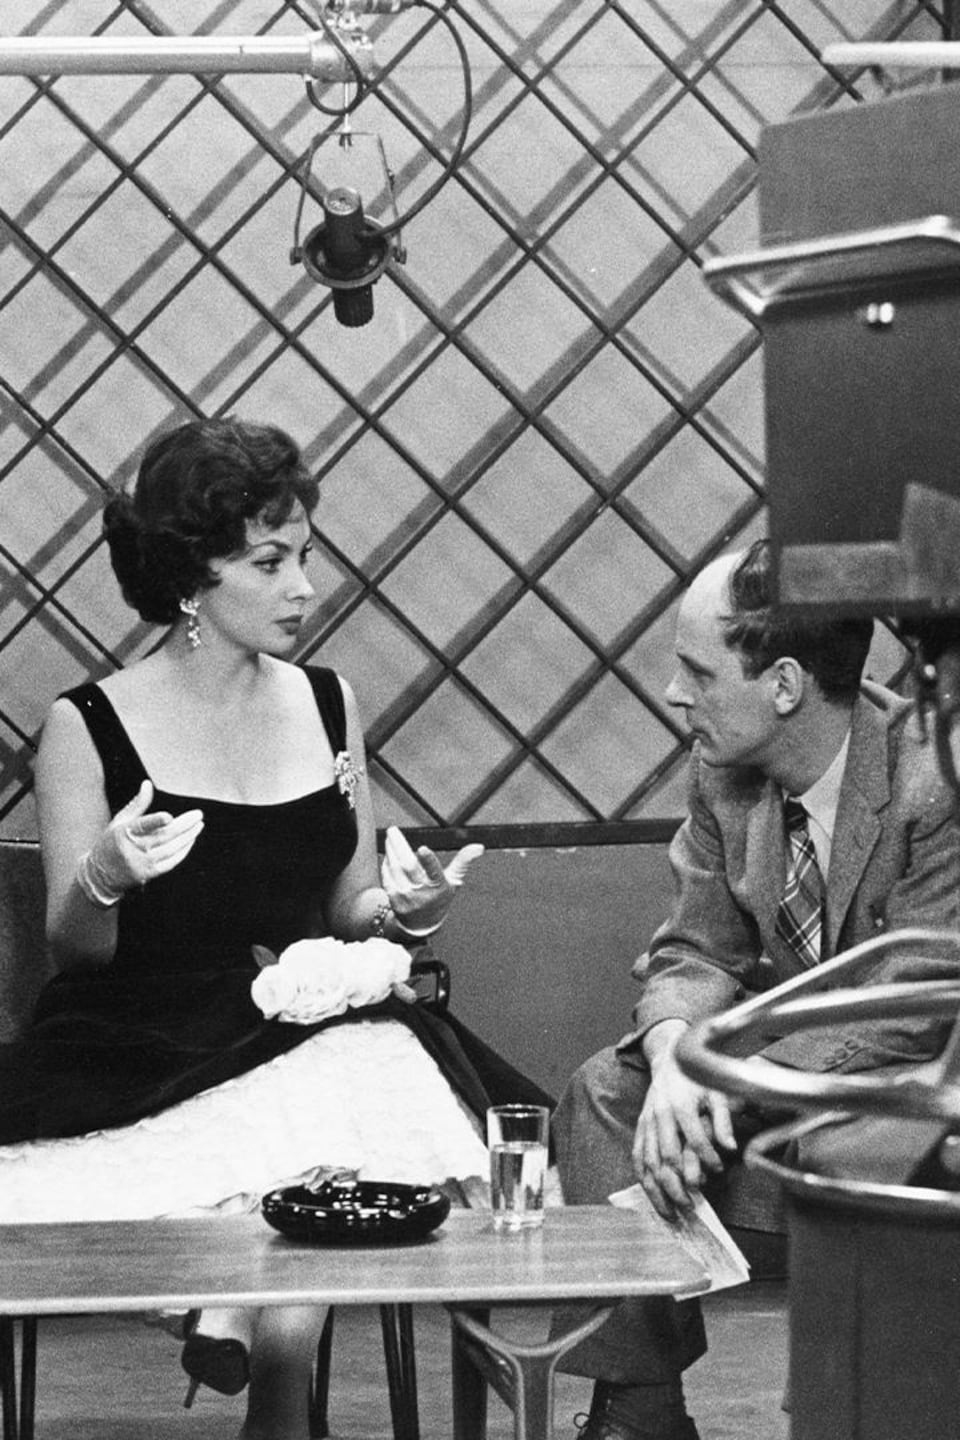 Dans un studio de télévision, le journaliste René Lévesque écoute l'actrice italienne Gina Lollobrigida. Un caméraman non identifié de dos filme l'entrevue, la silhouette d'une deuxième caméra au premier plan à gauche ainsi qu'un microphone au bout d'une perche complètent le décor.